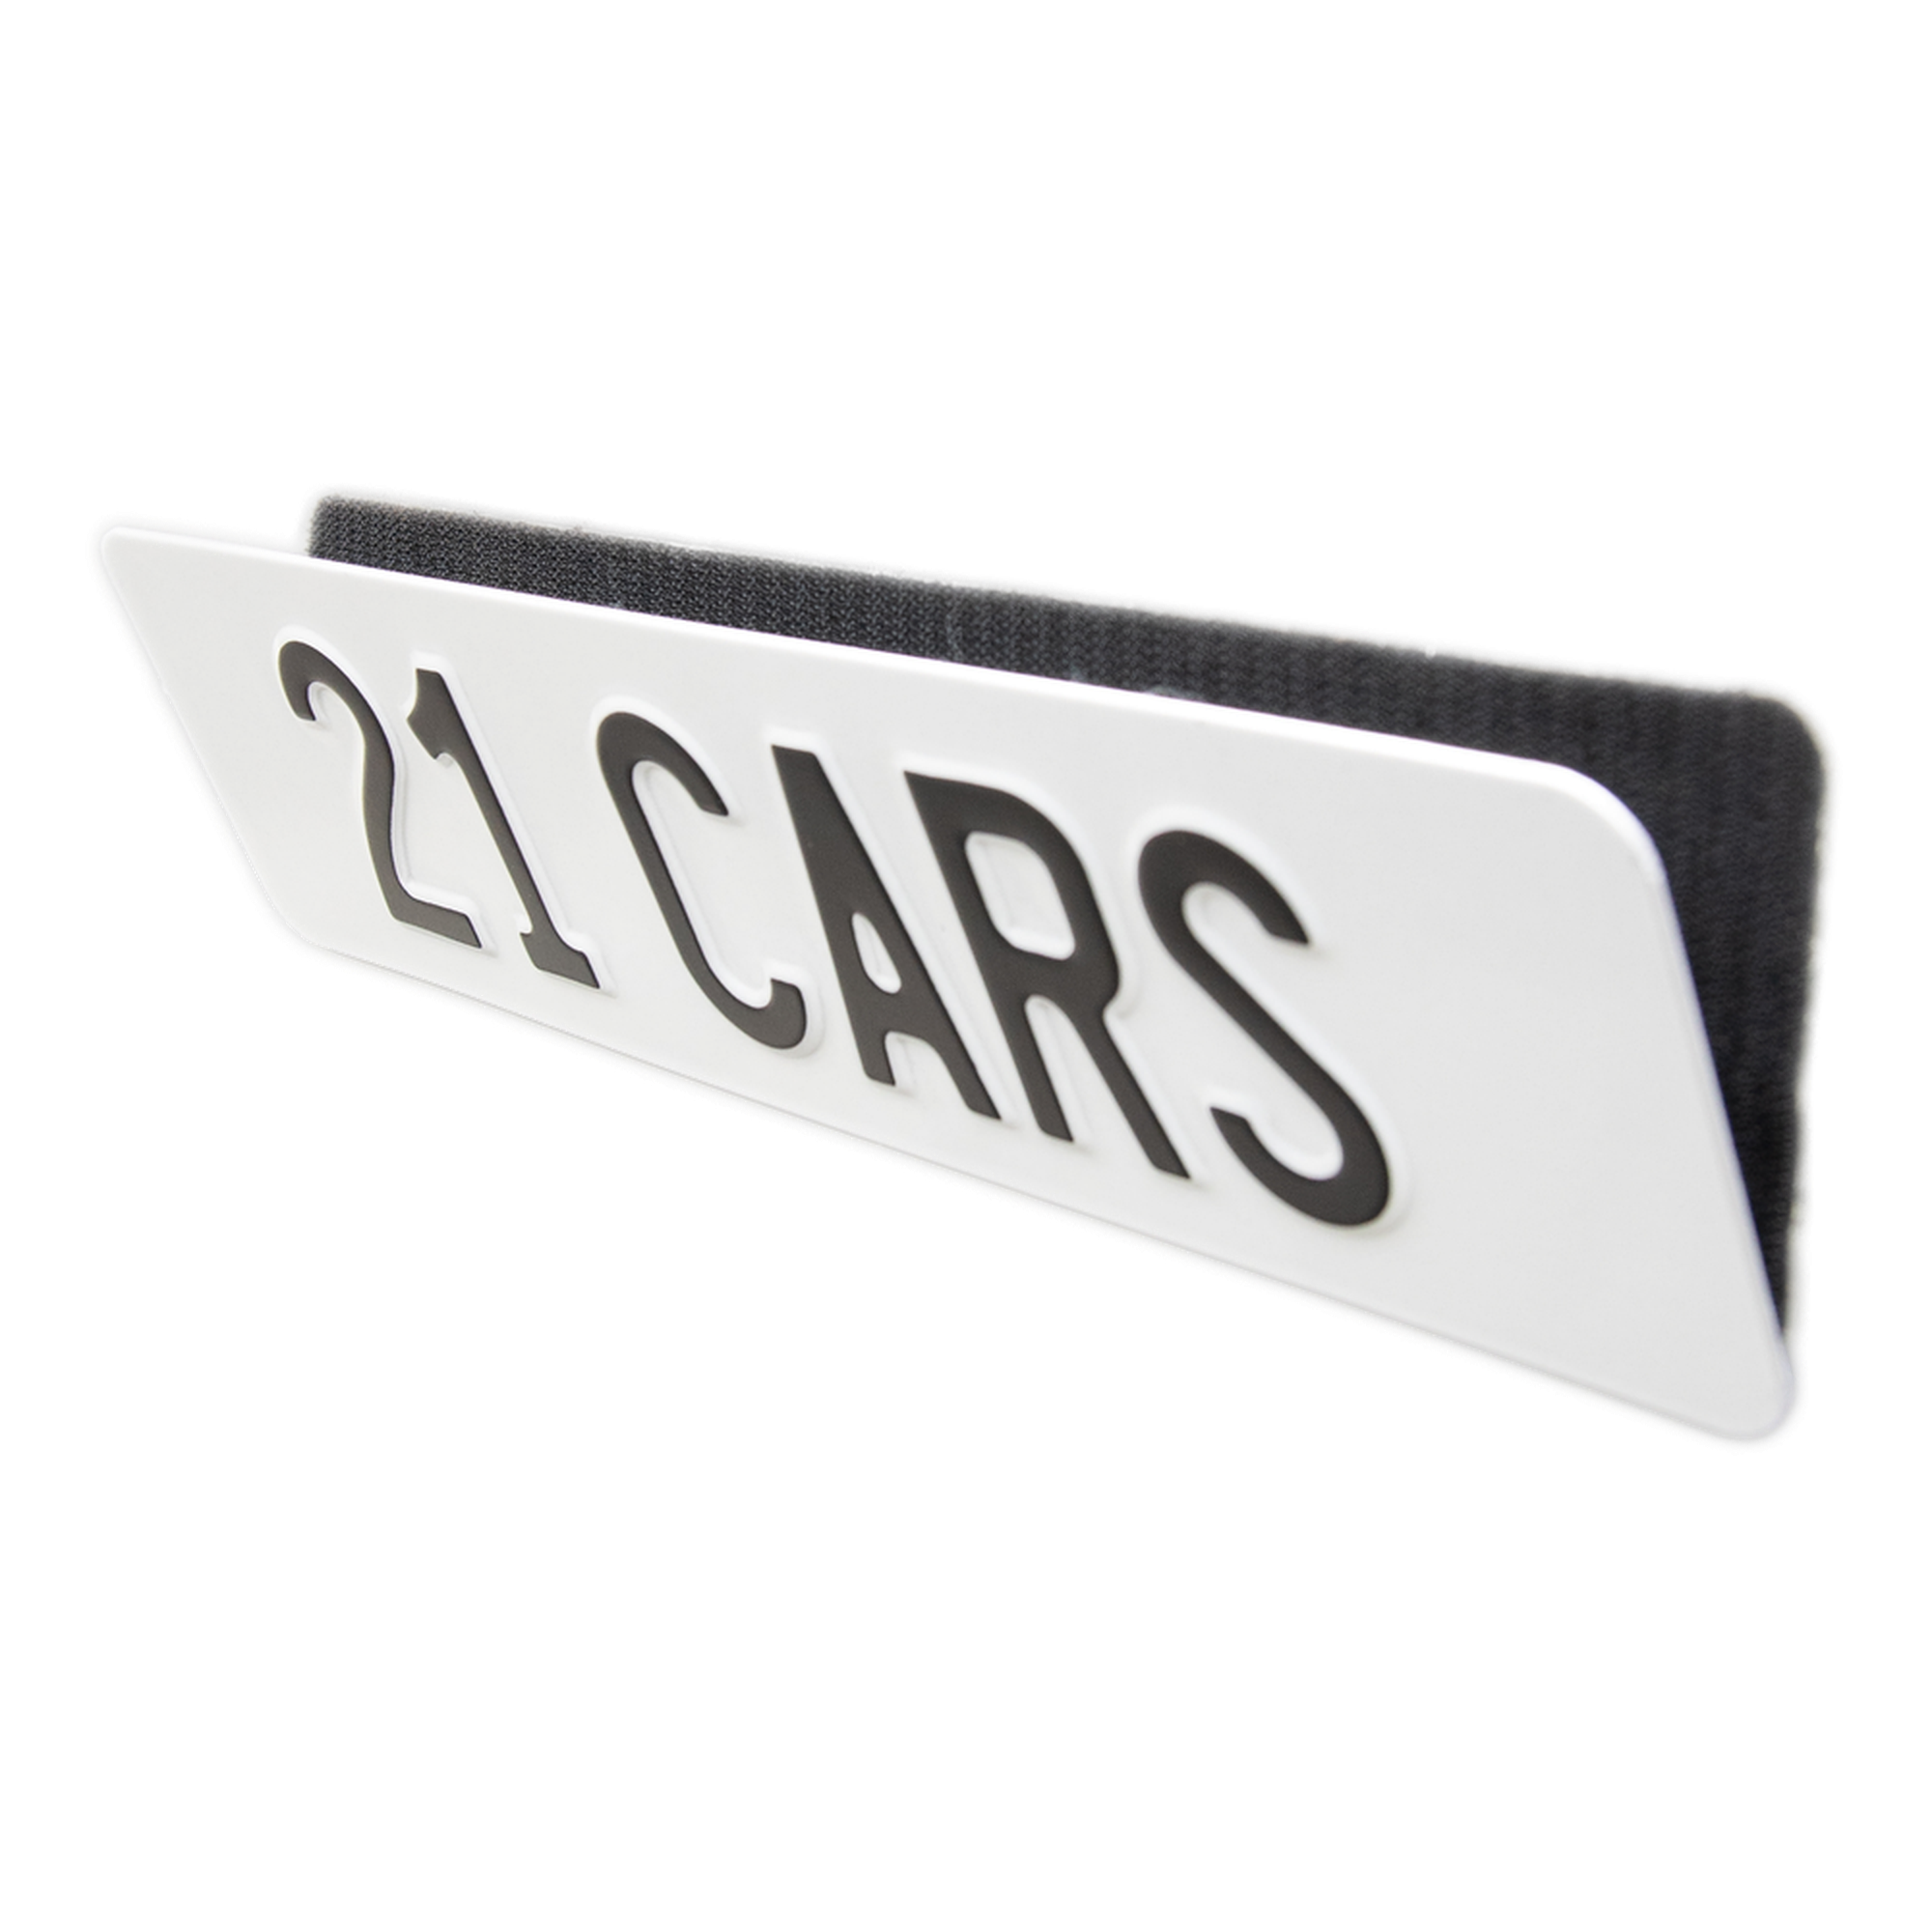 21 cars Kennzeichenhalter